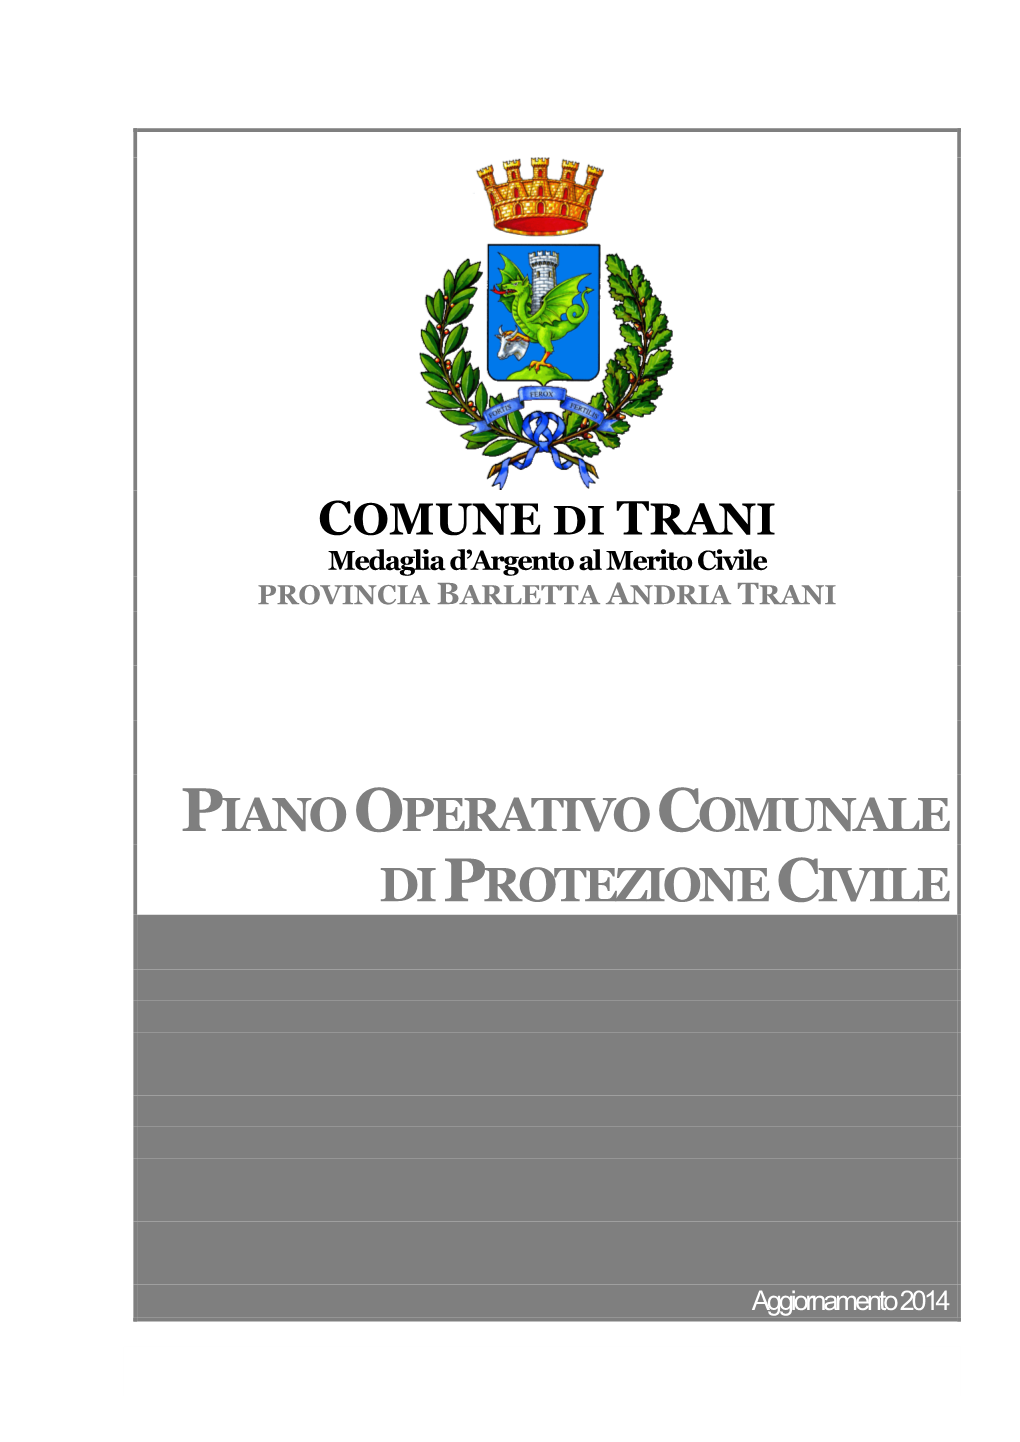 PIANO OPERATIVO COMUNALE DI PROTEZIONE CIVILE Risorse Comunali